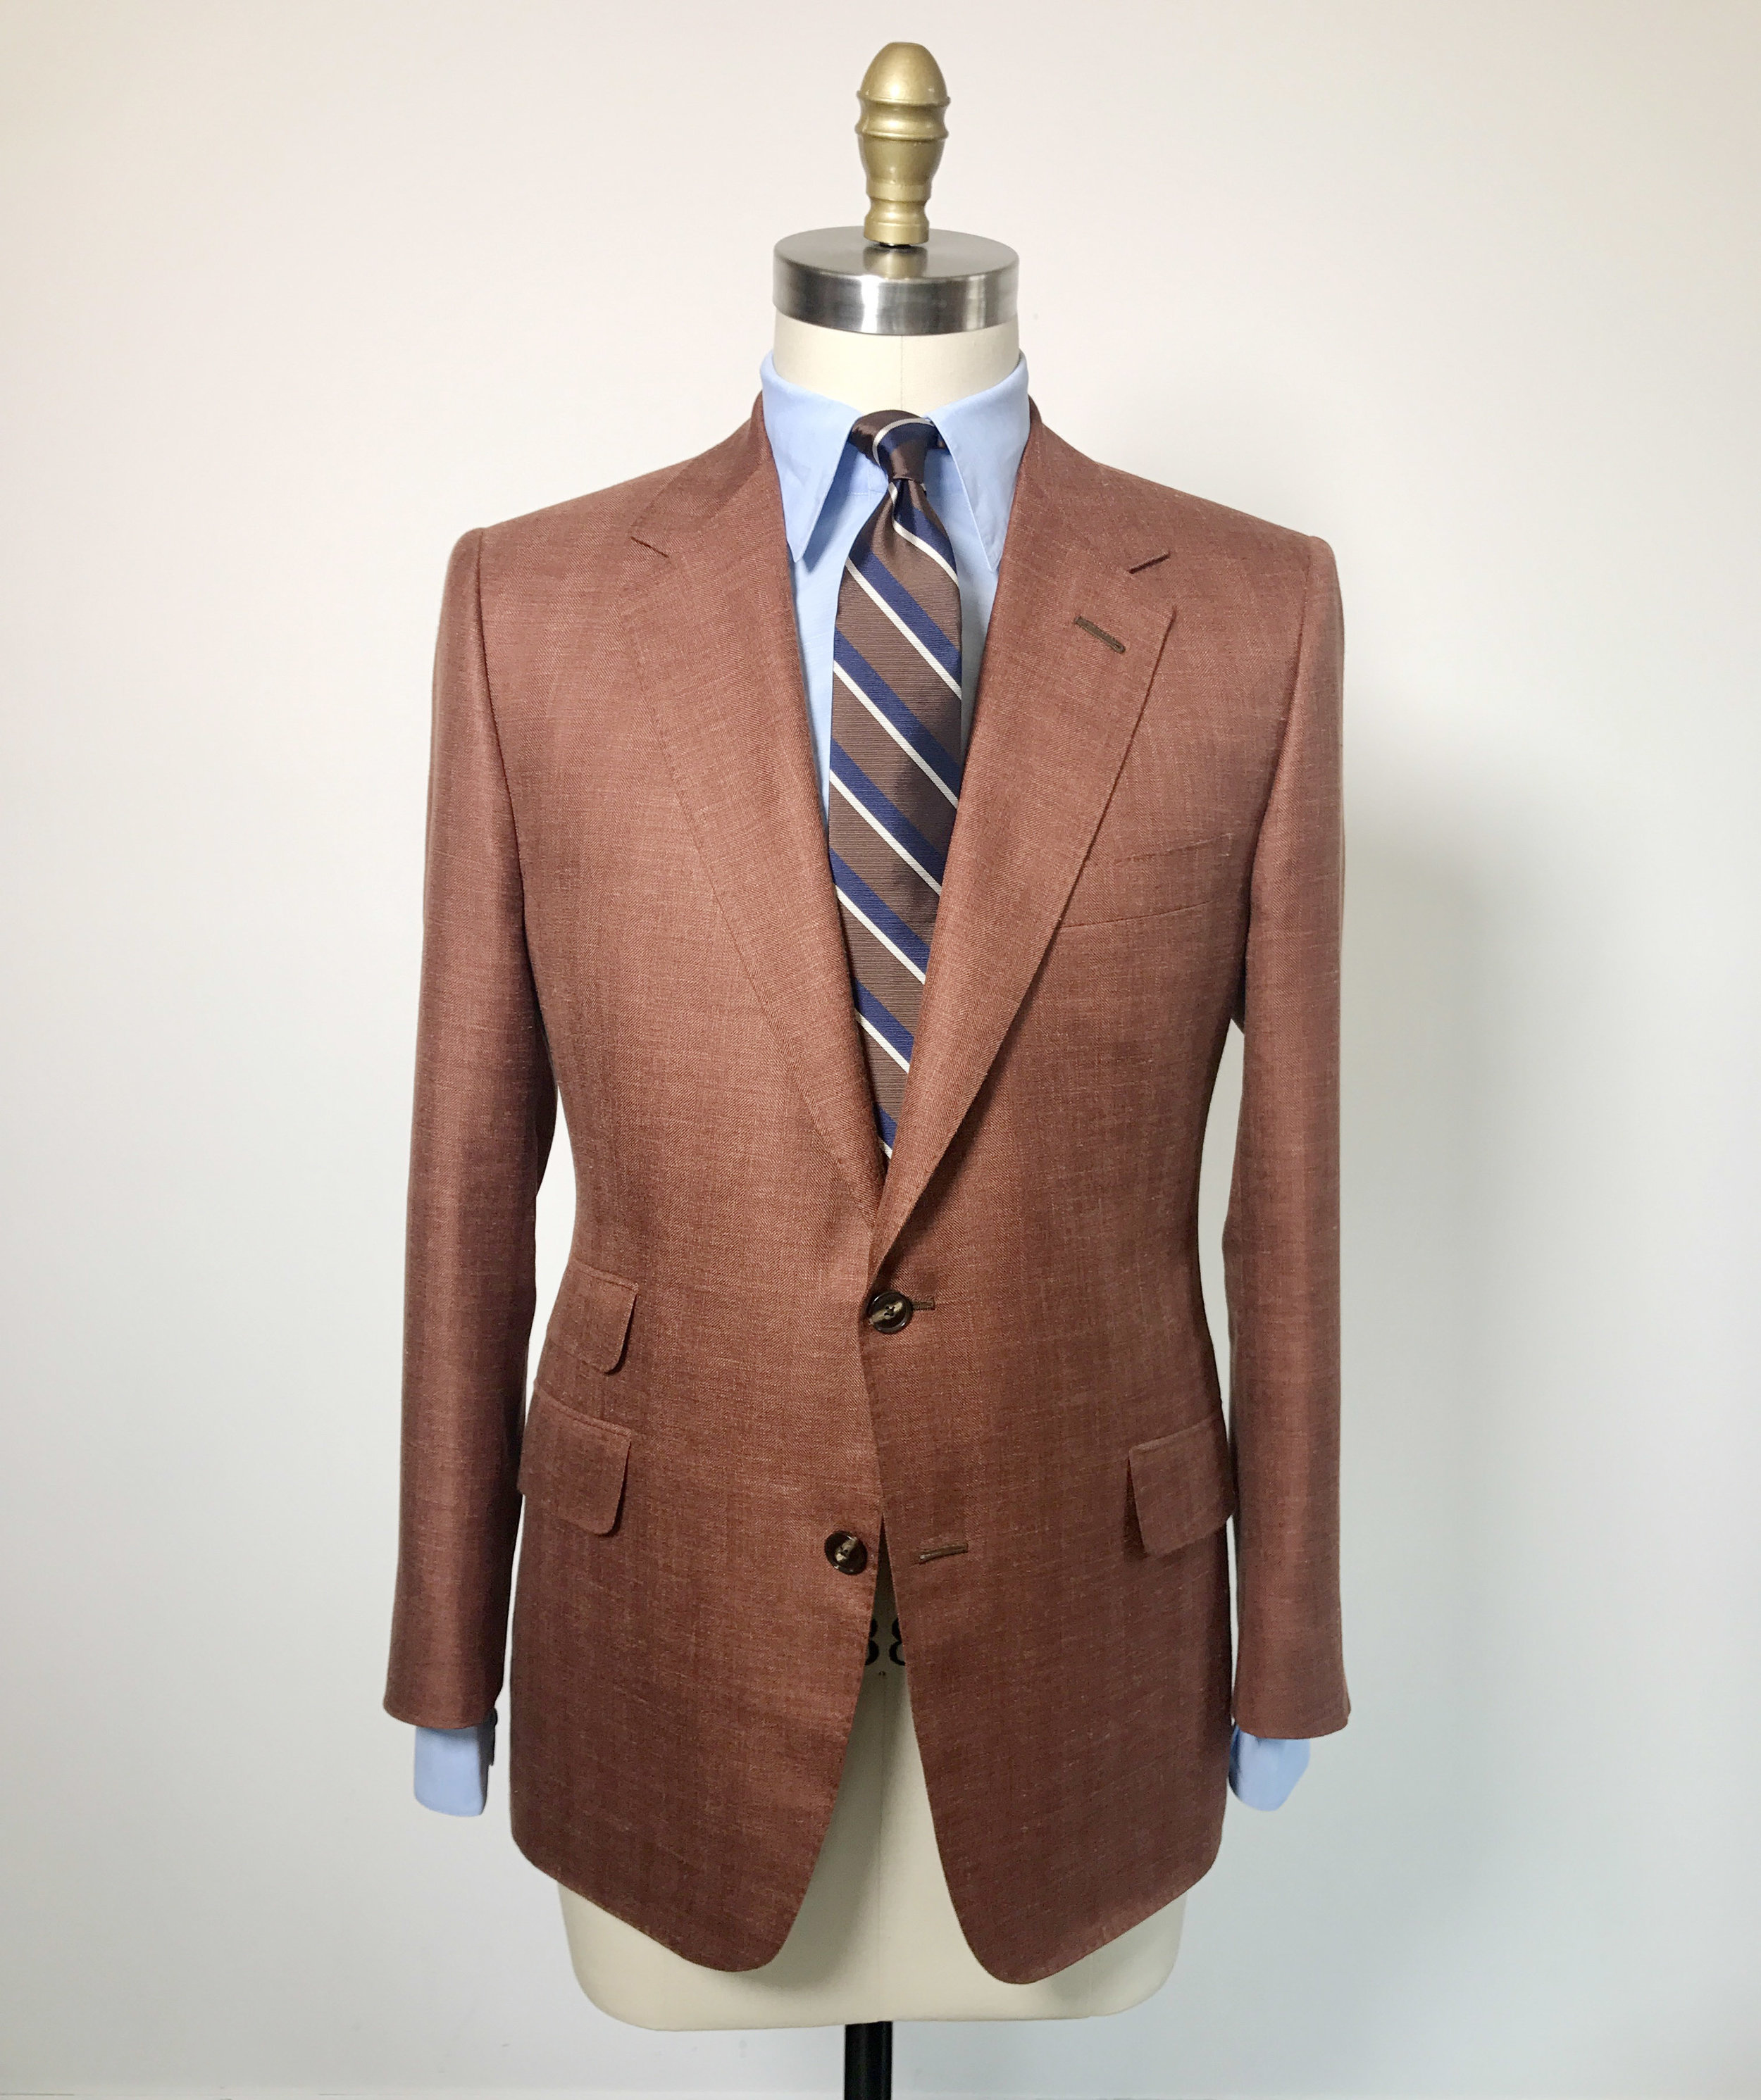 Red brown suit jacket.jpg